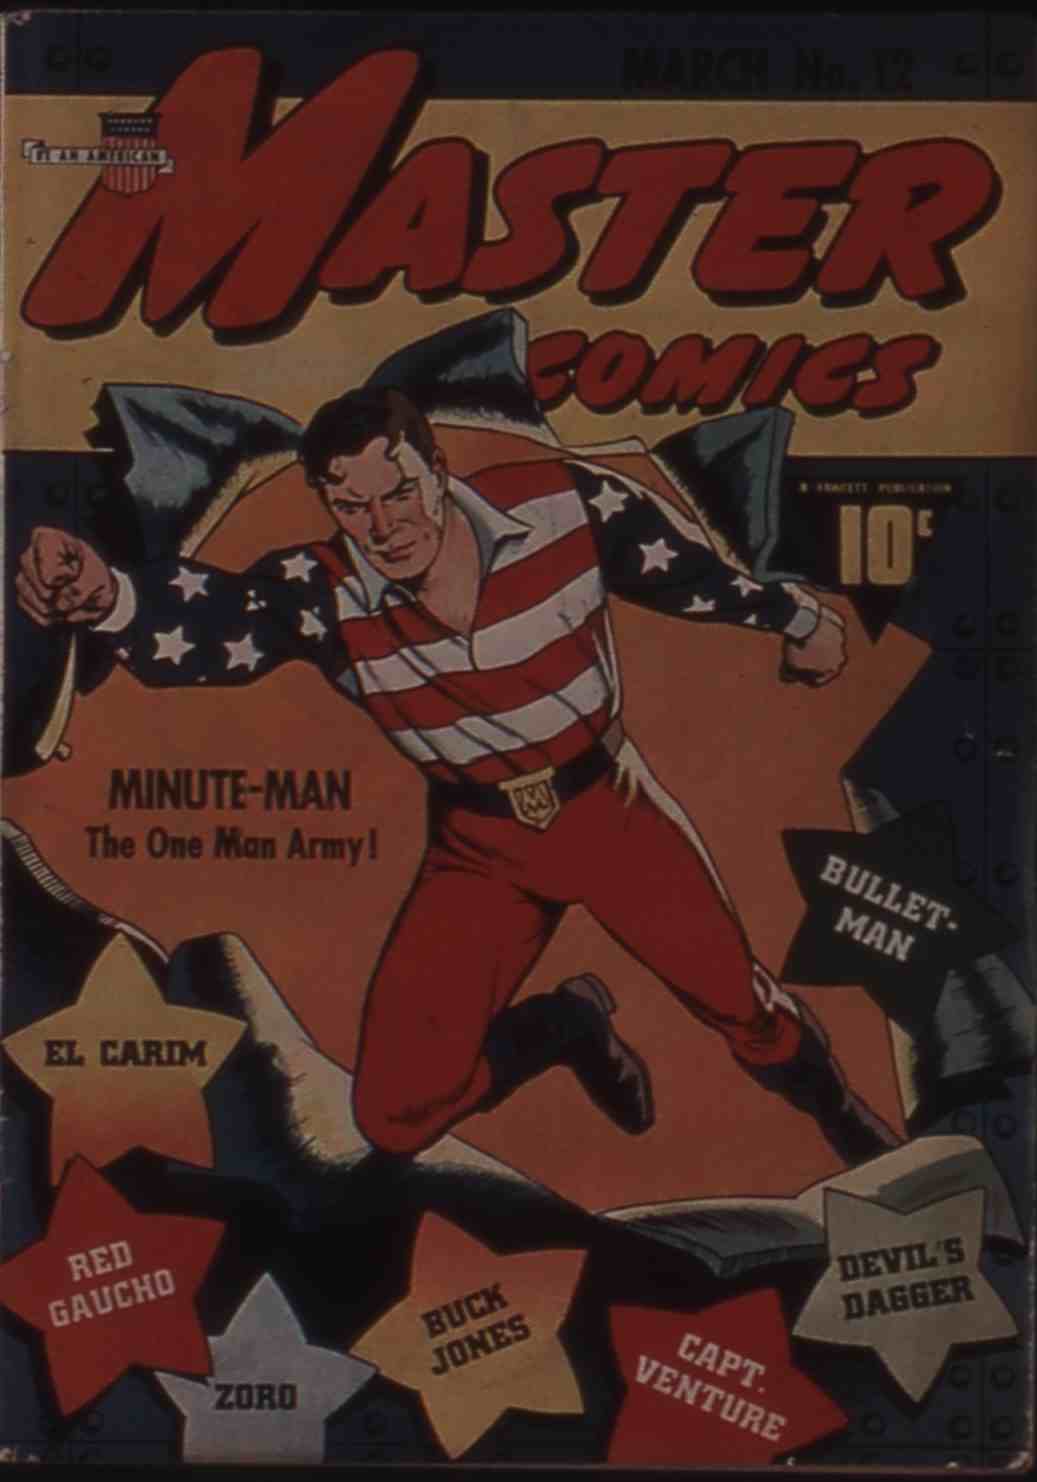 Book Cover For Buck Jones (Fawcett Master Comics) vol 1